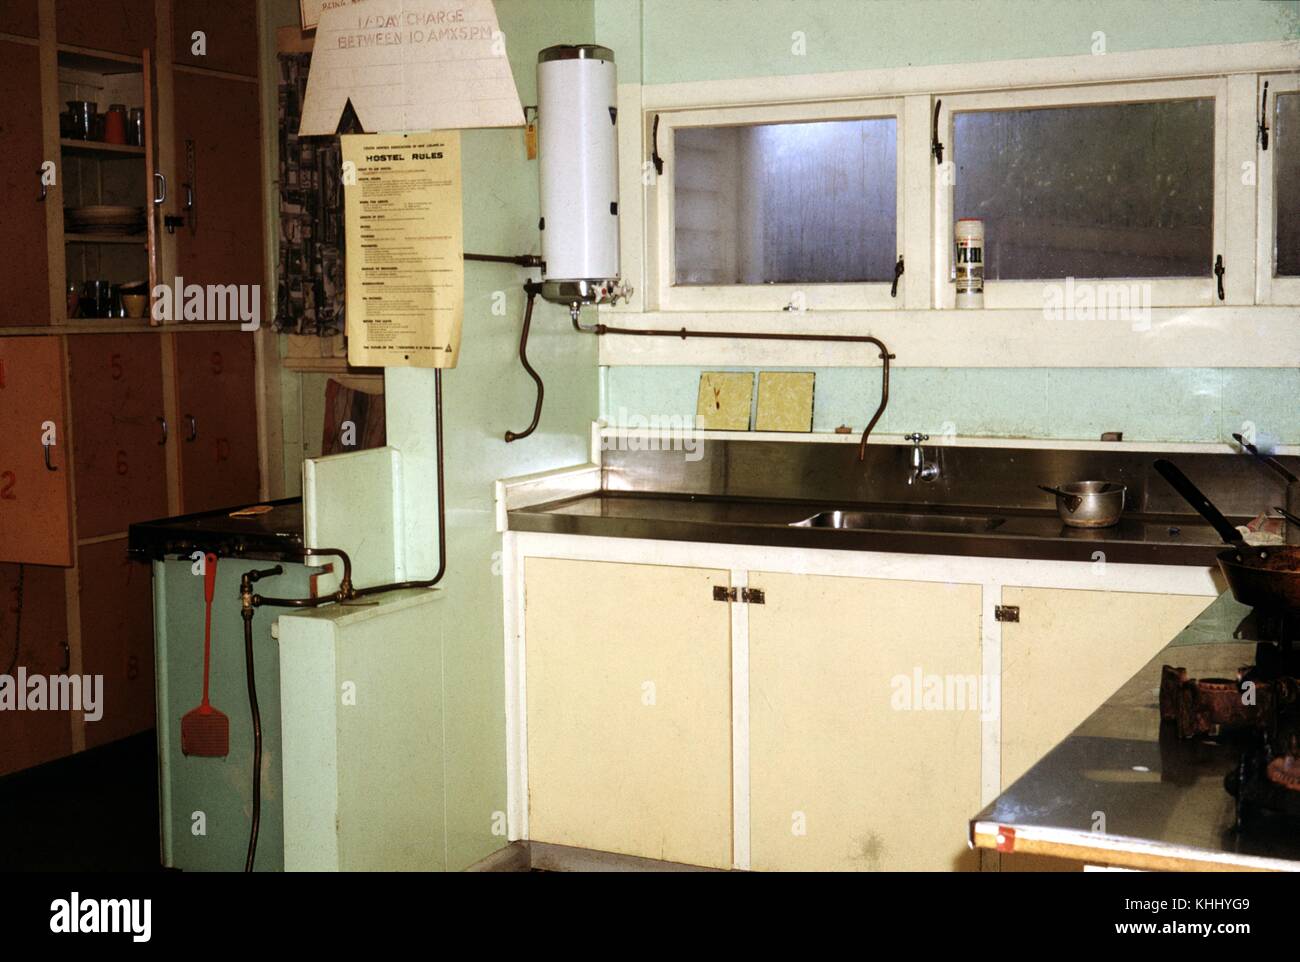 Ein Foto von einer Küche in einer Jugendherberge, die Zähler und Waschbecken aus Edelstahl abgedeckt werden, eine große Anzahl von Schränken kann im Hintergrund gegenüber einem Flat Top Grill gesehen werden, drei Fenster über der Spüle und Arbeitsplatte, Neuseeland, 1961 befinden. Stockfoto